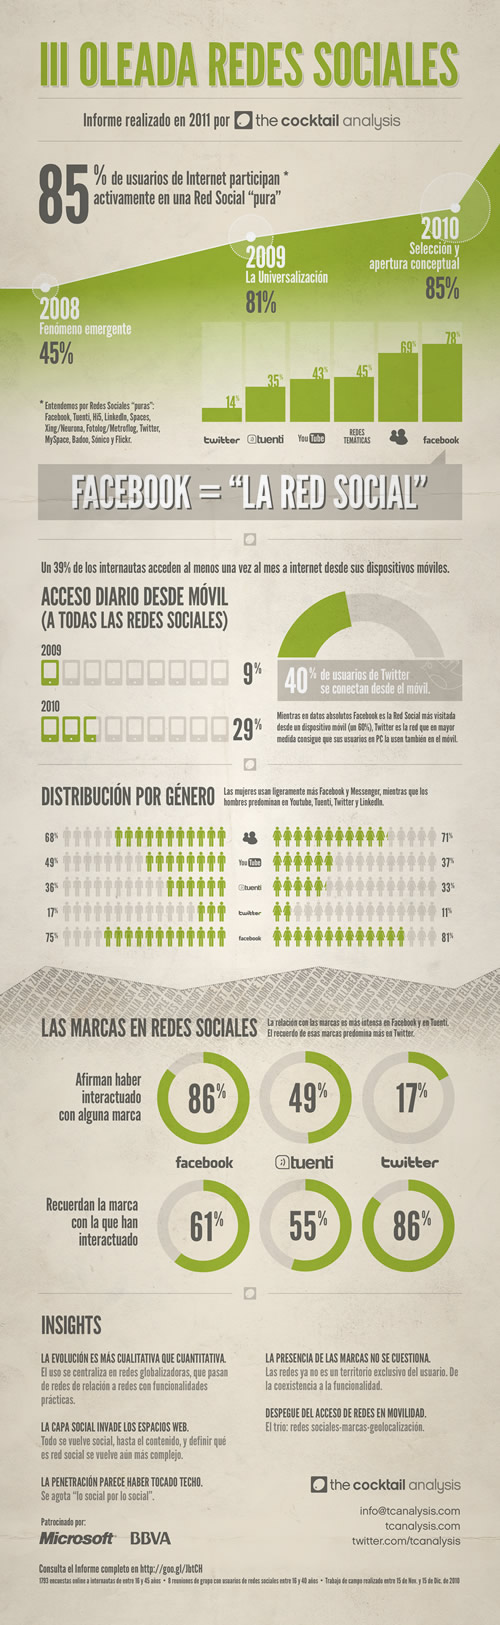 III Oleada Redes Sociales: Estudio sobre redes sociales en España [Infografía] 1